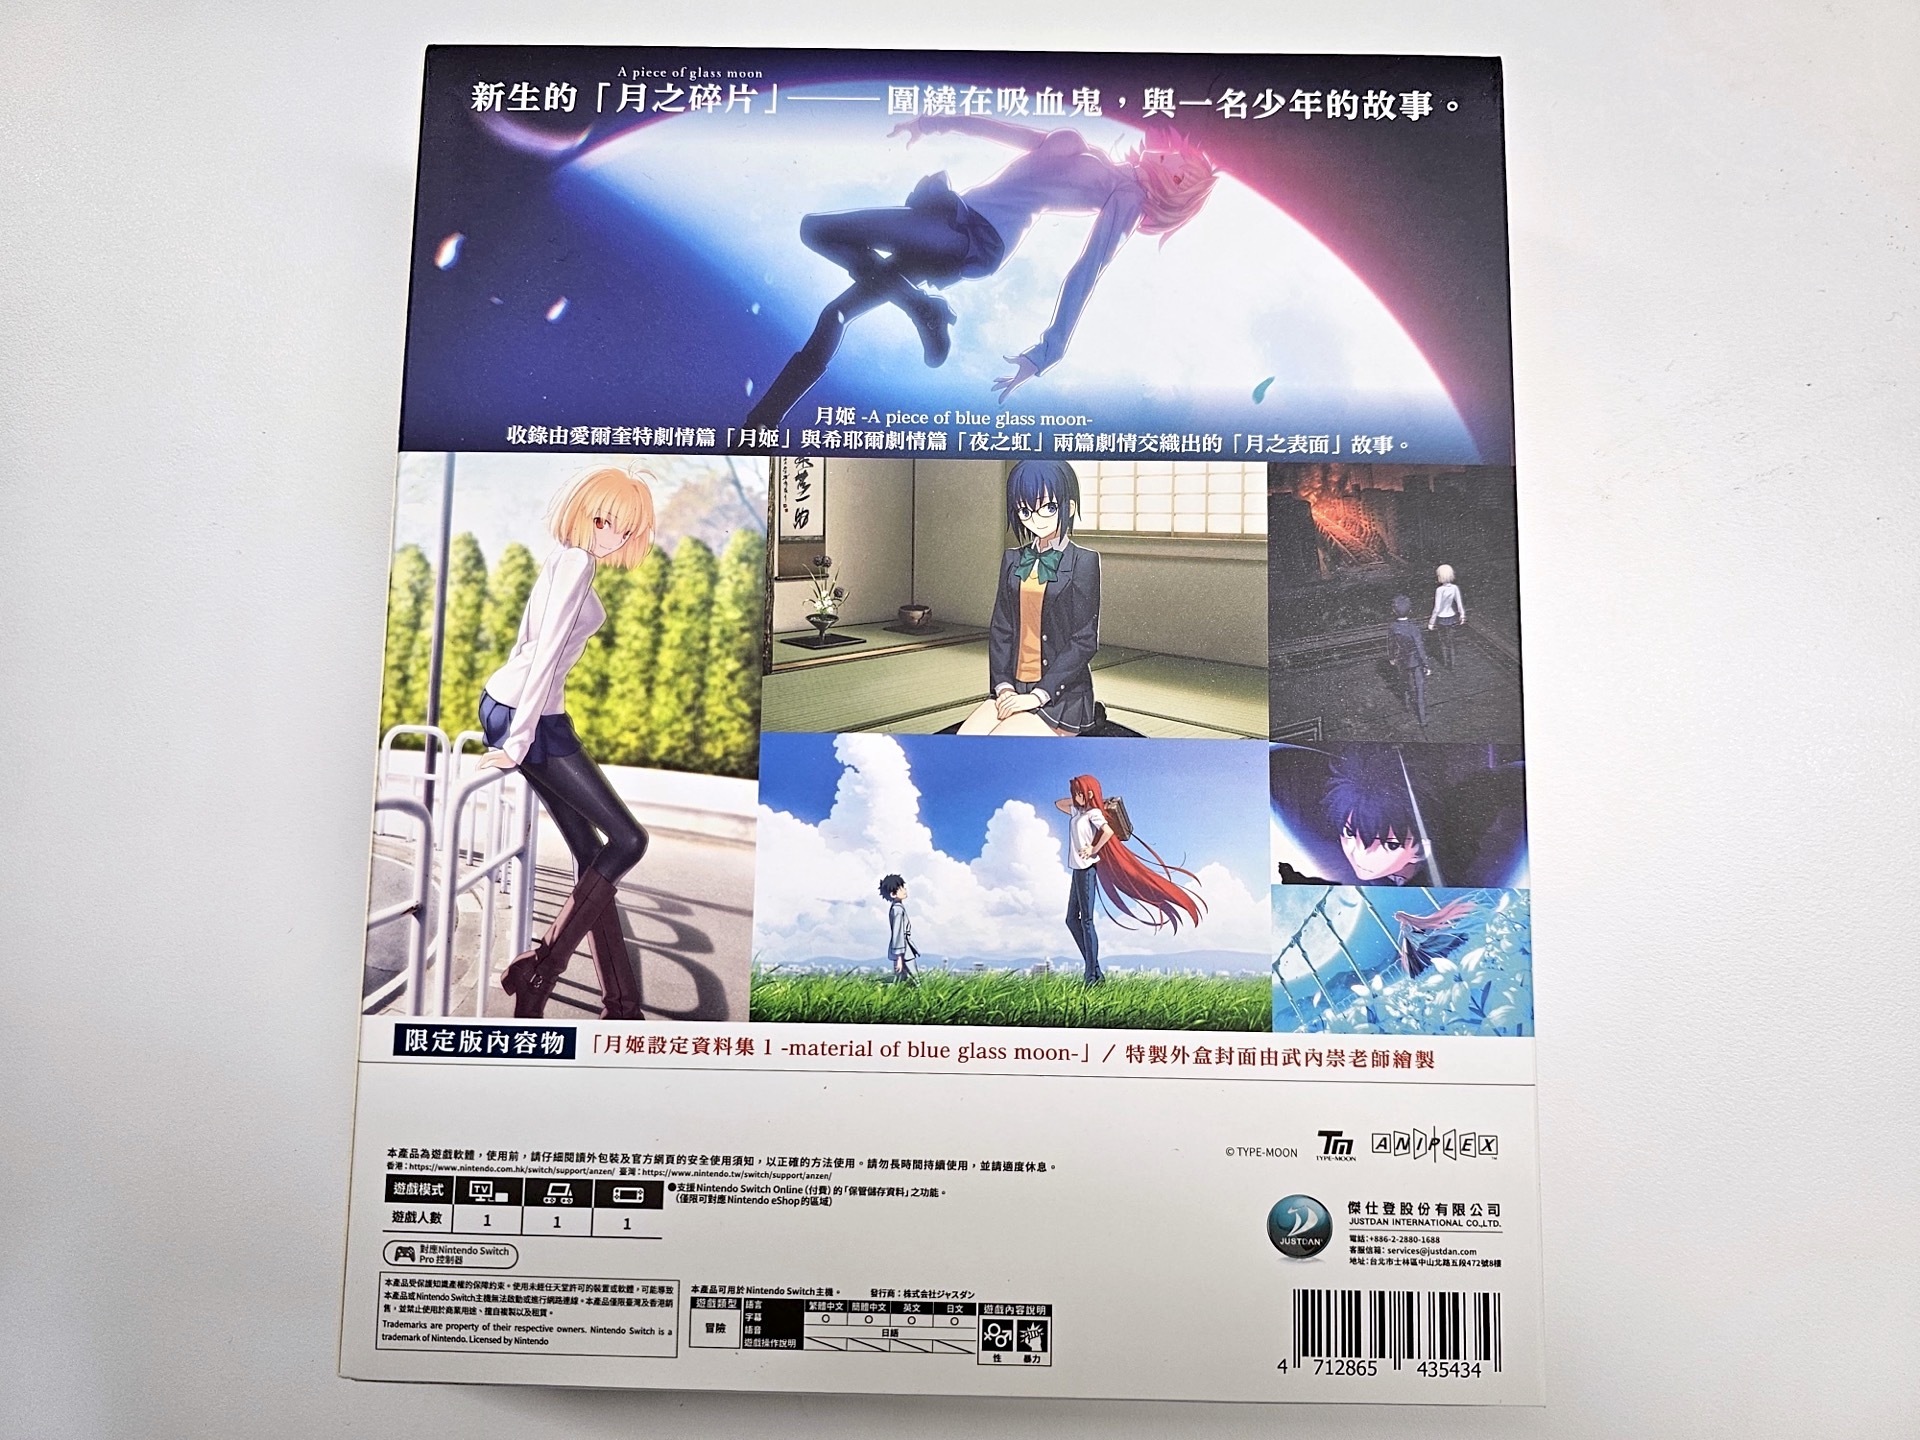 《月姬 -A piece of blue glass moon-》今日发售 繁体中文限定版开箱介绍